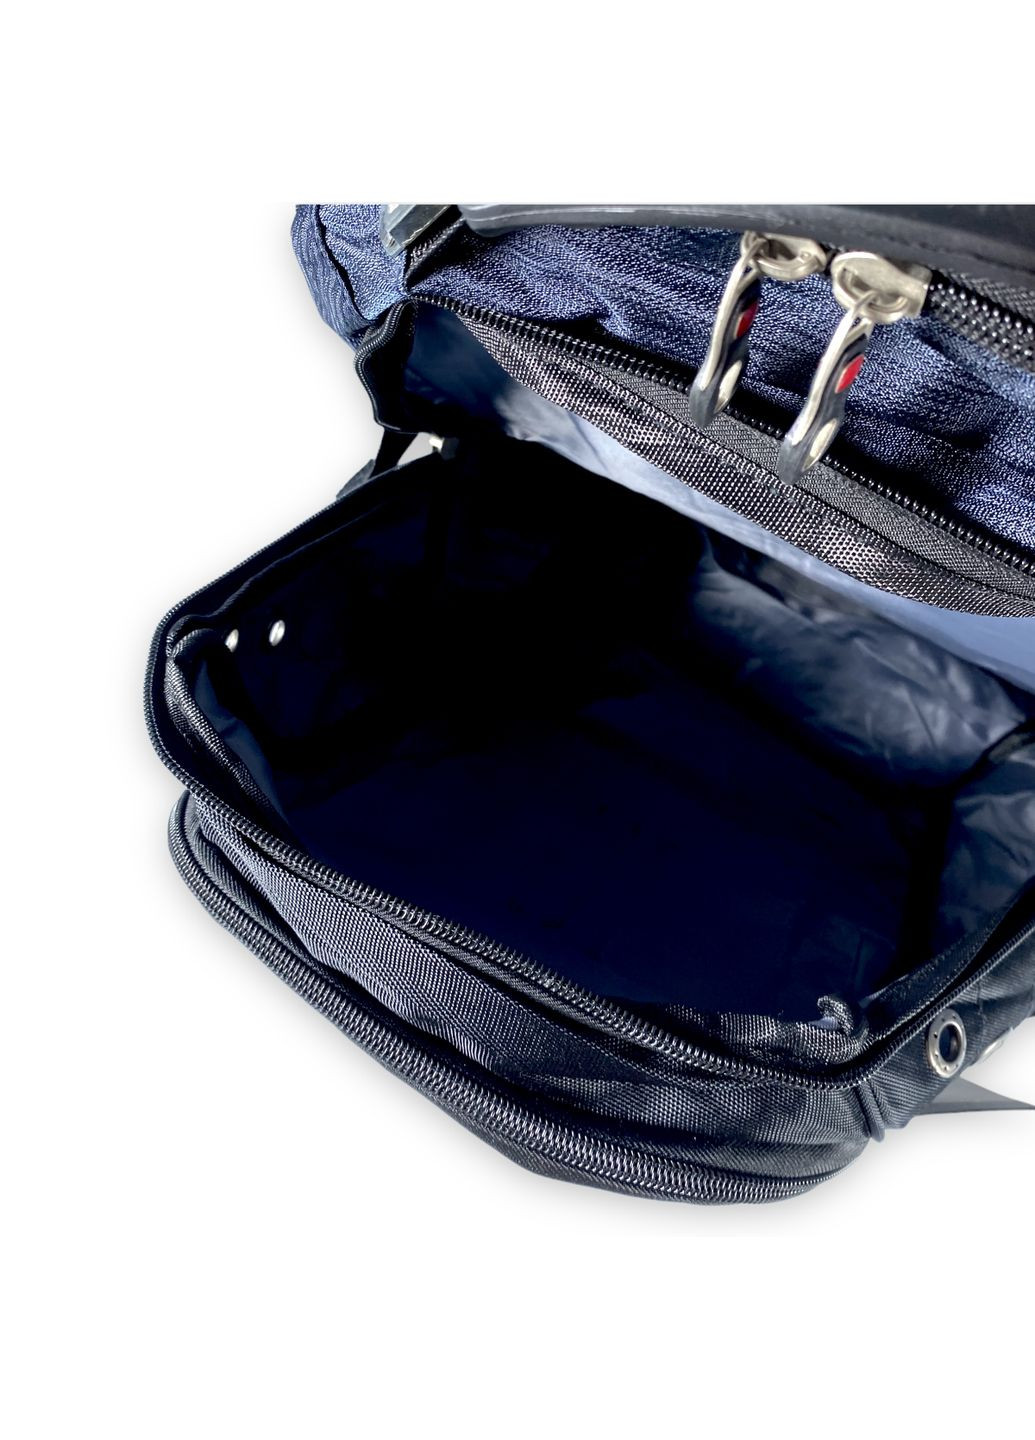 Міський рюкзак з чохлом від дощу 30 л, три відділення, USB розʼєм, розмір: 50*30*20 см, синій SWISSGEAR (284338089)